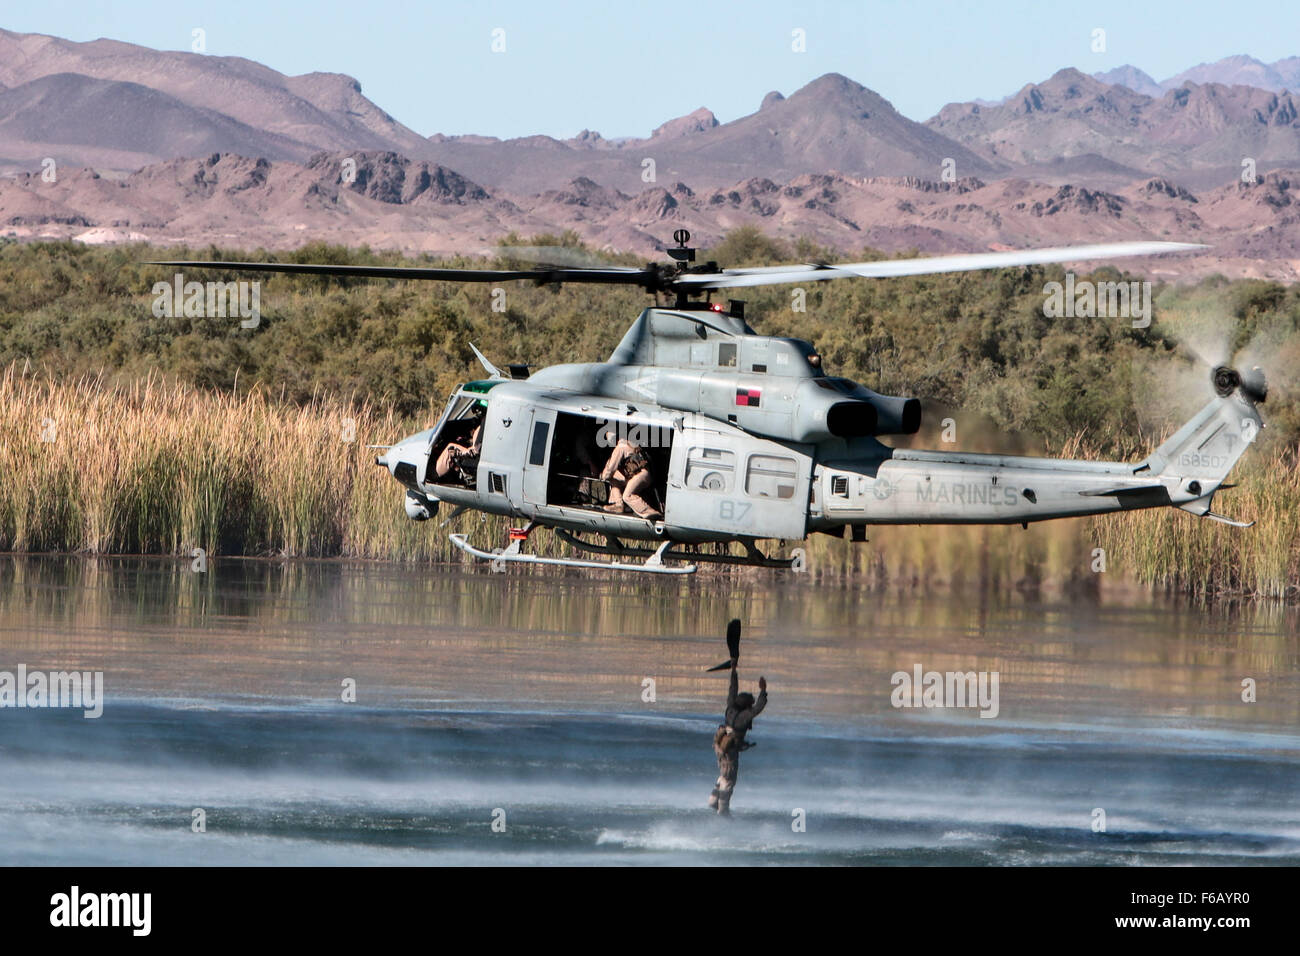 Un marine estadounidense con la 1ª Compañía de Reconocimiento de la fuerza, la Primera Fuerza Expedicionaria de la Marina realiza un ejercicio helocast fuera de un UH-1Y Venom en Ferguson Lake, cerca de Yuma, Arizona, el 3 de octubre de 2015. El ejercicio es parte de armas y tácticas Instructor (WTI) 1-16, un evento de capacitación de siete semanas organizado por la Aviación Marina armas y tácticas de escuadrón MAWTS Uno (cuadro 1). MAWTS-1 proporciona entrenamiento táctico estandarizado y certificación de calificaciones de instructor de la unidad de apoyo a la formación y preparación de la Aviación Marina y colabora en el desarrollo de la aviación y empleando armas y tácticas. (Ee.Uu. Marine Corps photog Foto de stock